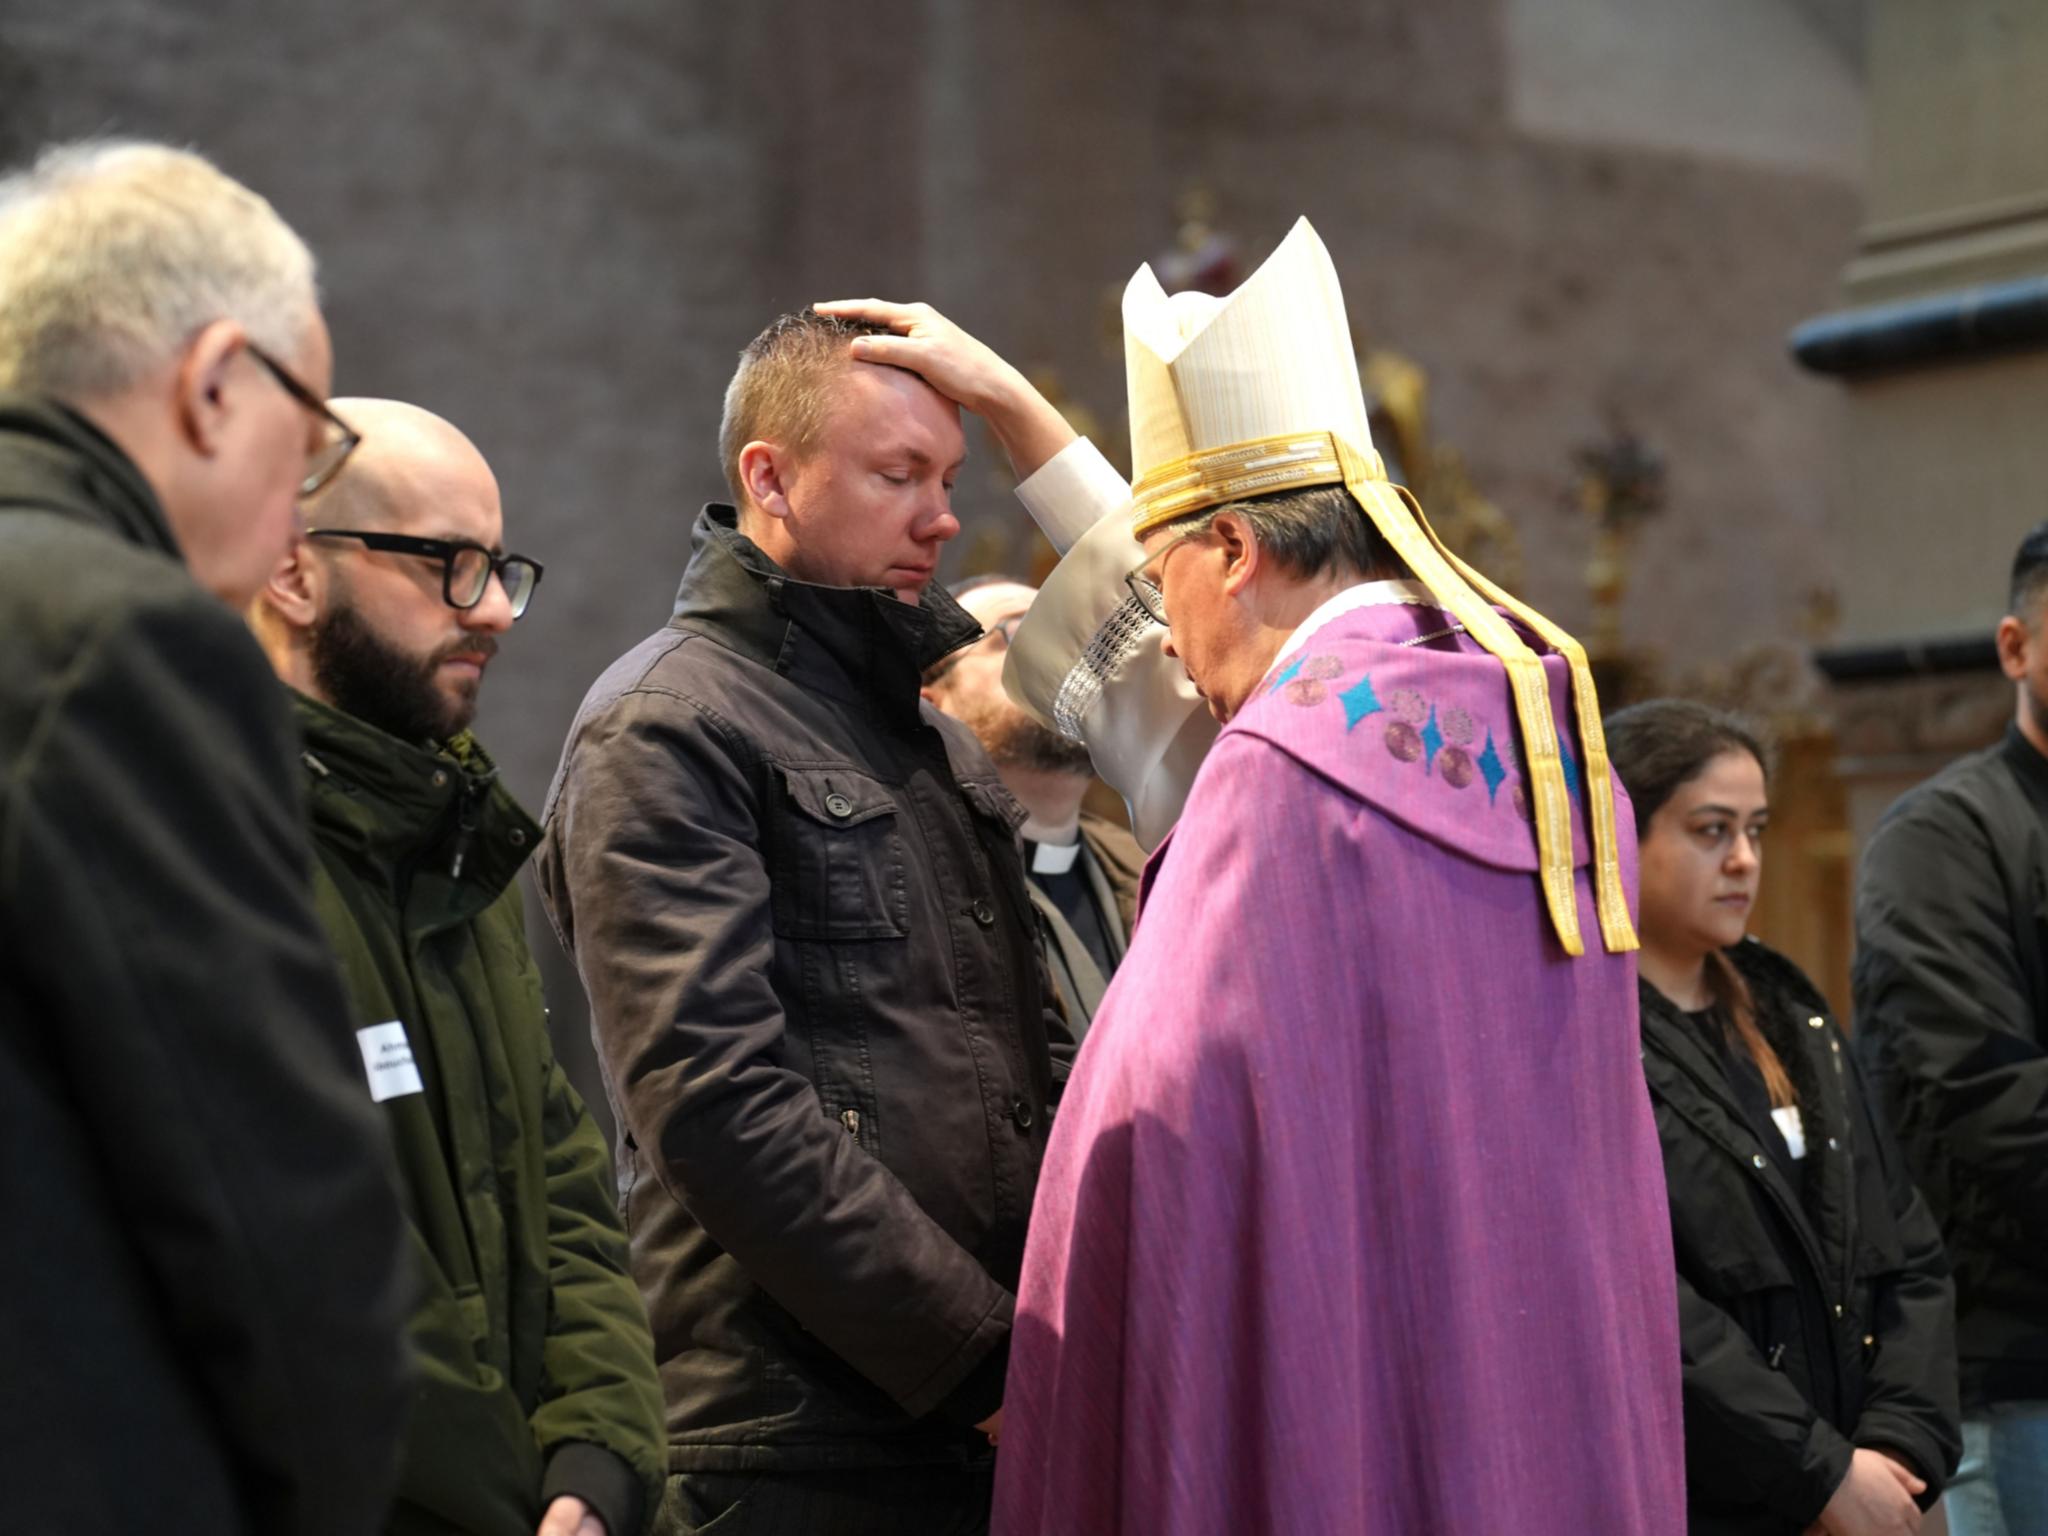 Nach der Zulassung zu den Sakramenten spricht der Bischof ein Segensbebet und legt im Anschluss jeder und jedem die Hand auf als Zeichen des Segens und der Zuwendung.